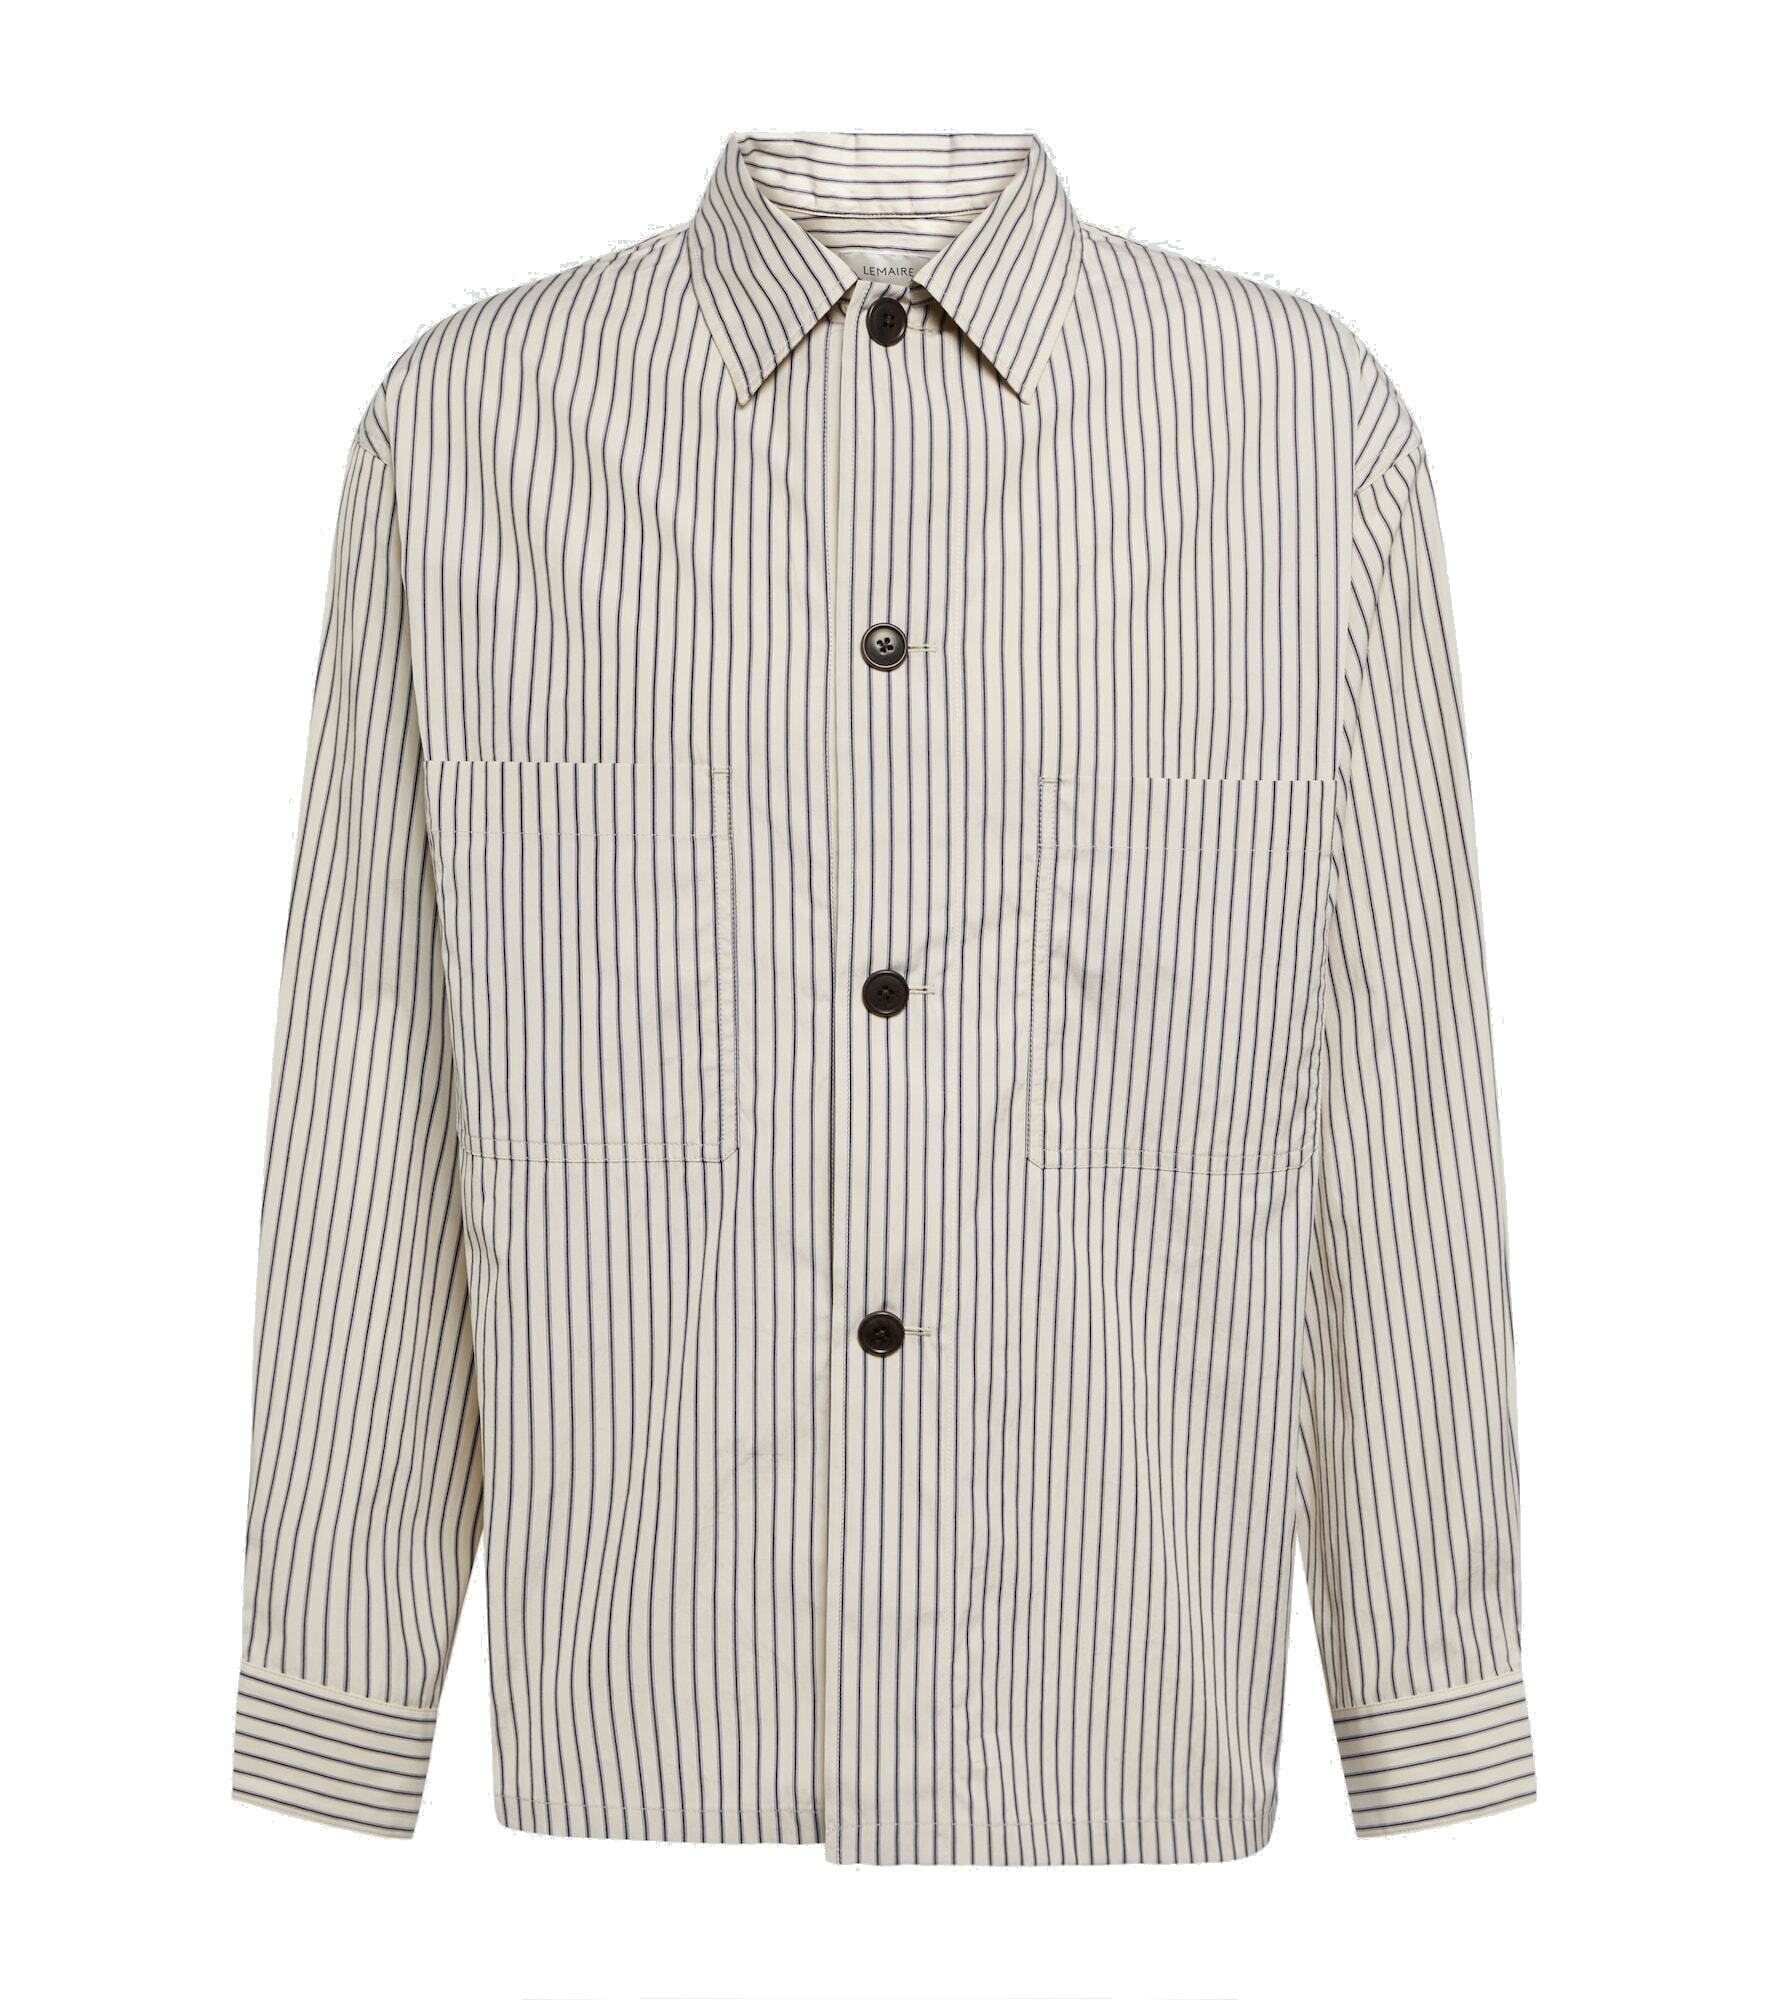 Lemaire - Striped cotton shirt Lemaire